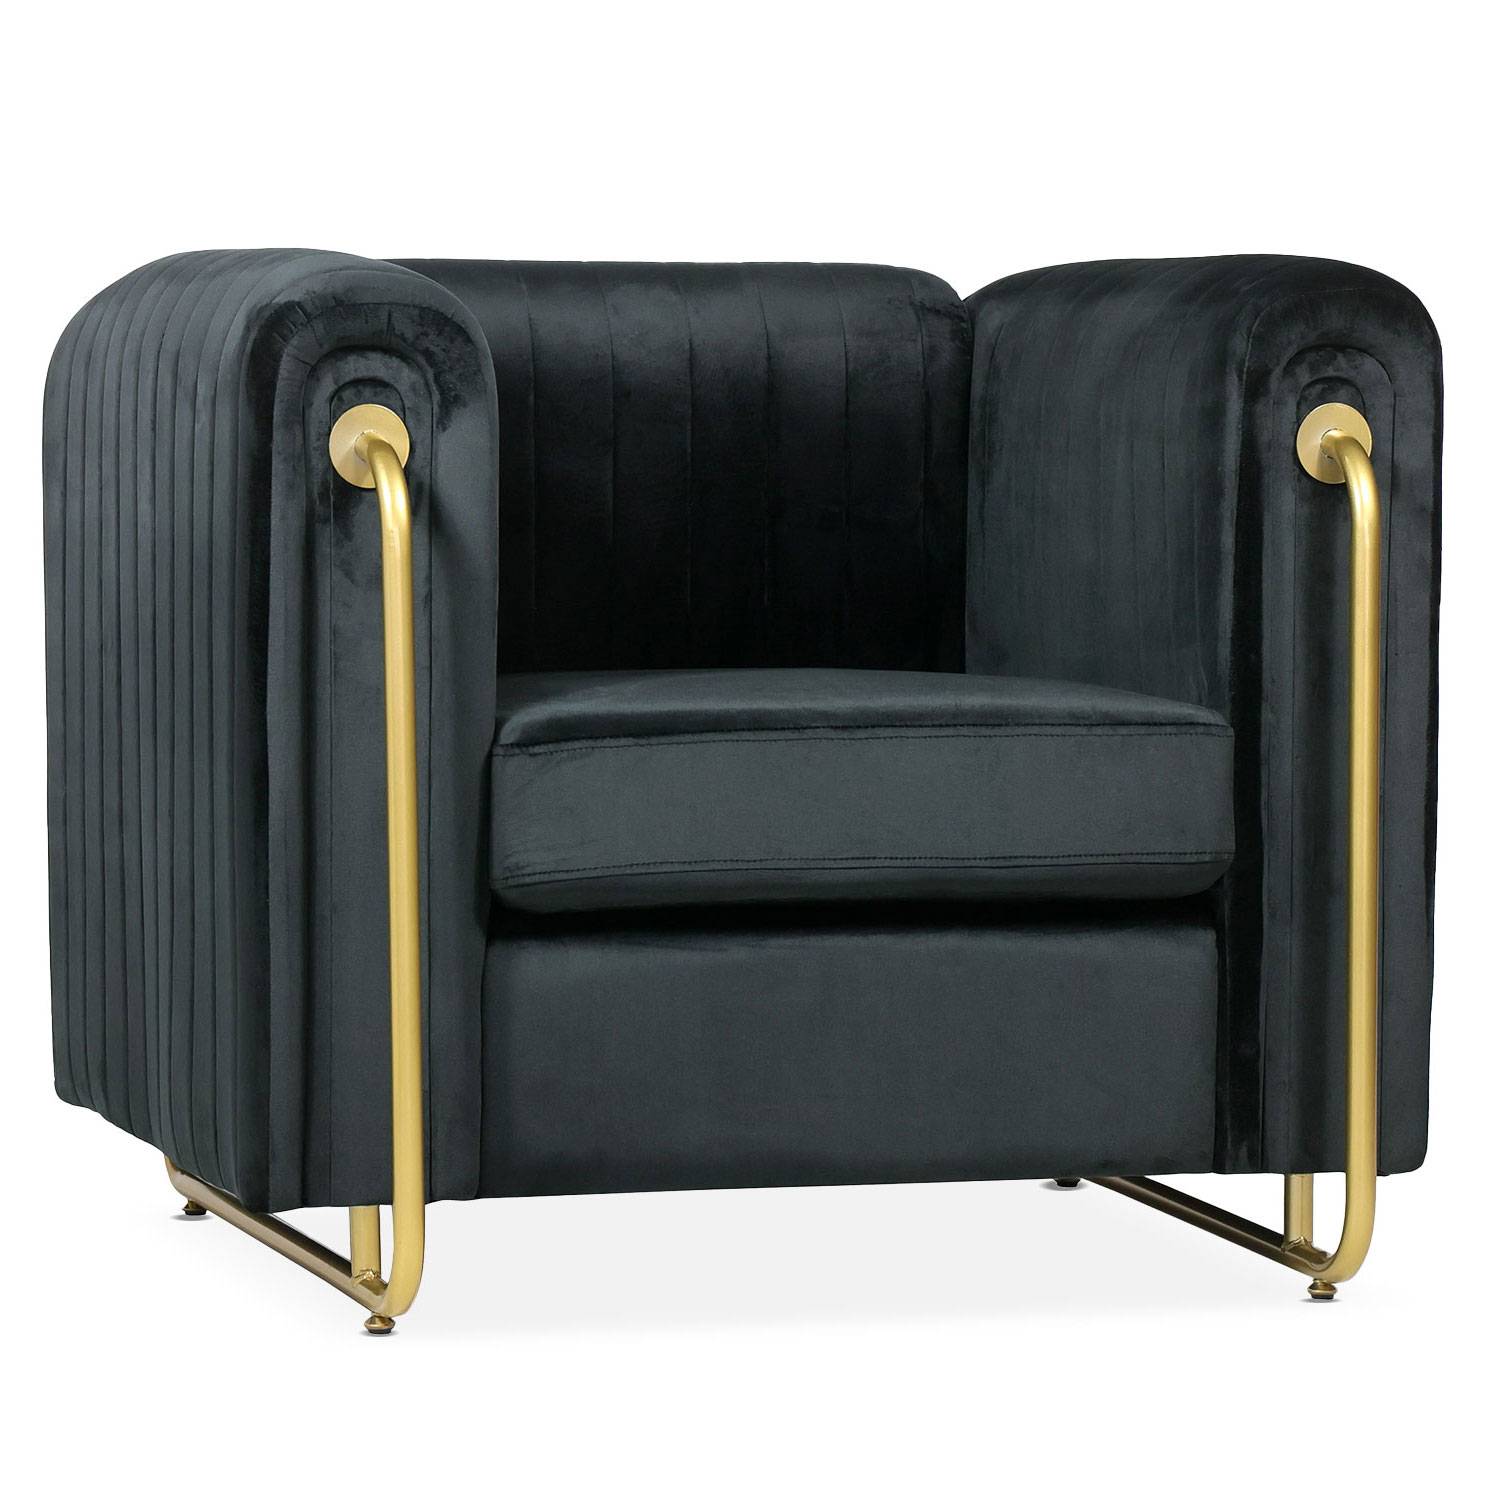 Edward art deco fauteuil met verguld metalen frame en zwart fluweel